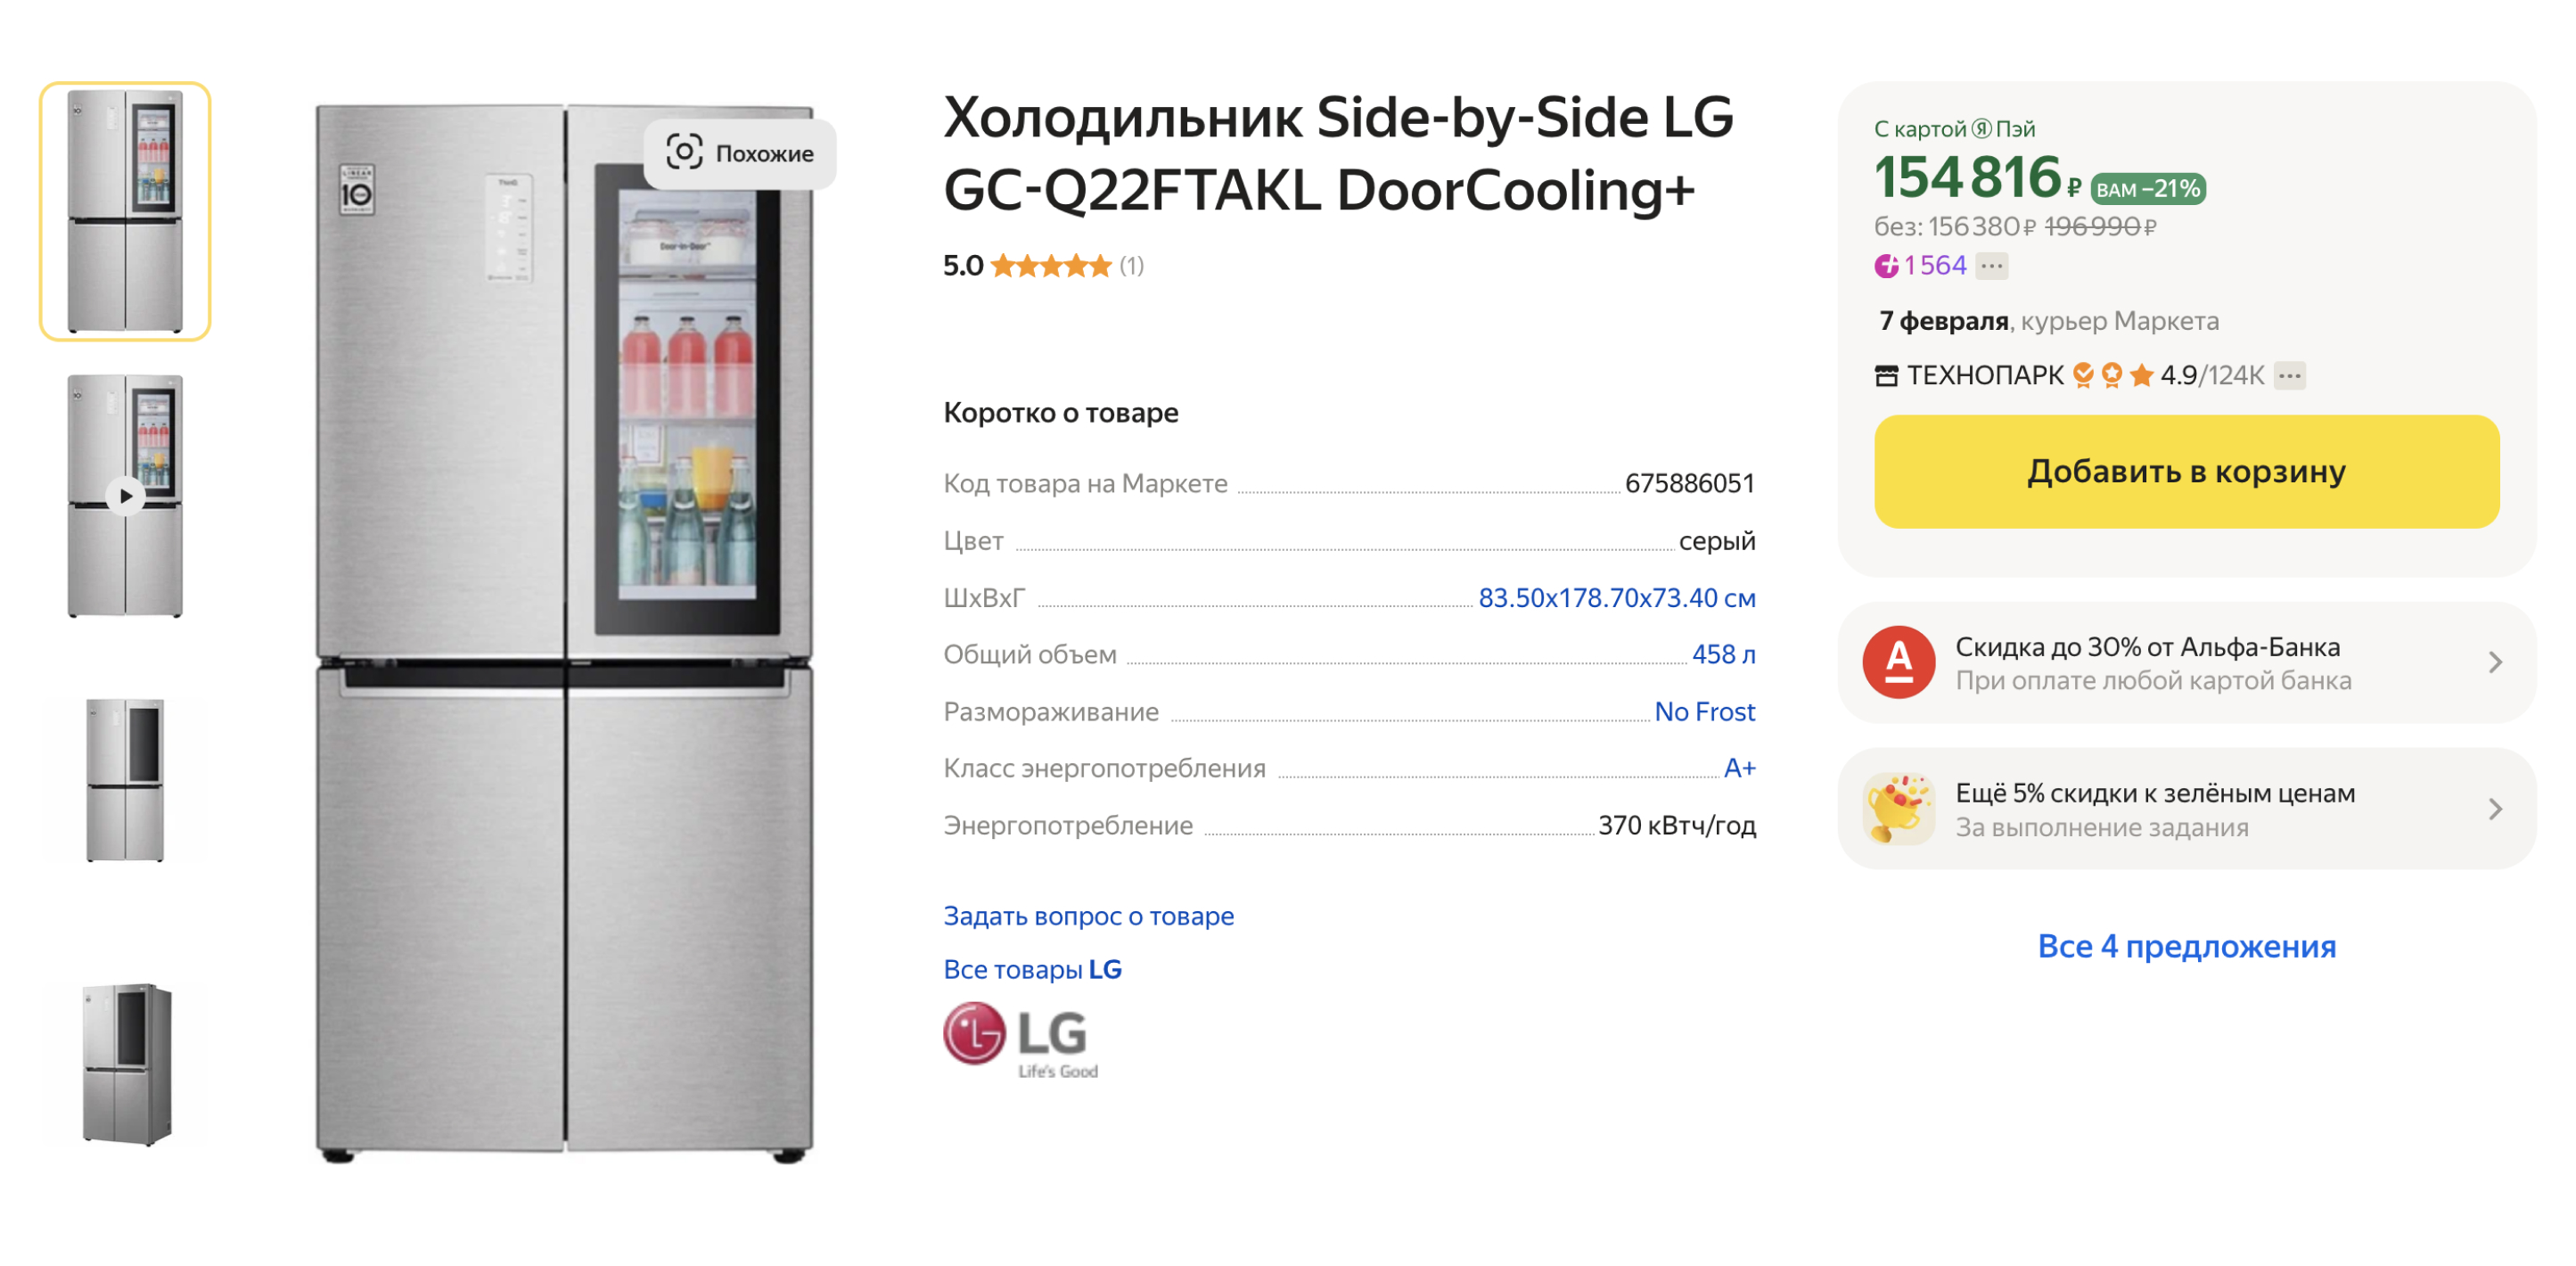 Холодильник с витриной — модный тренд. По отзывам, в таких холодильниках продукты дольше остаются свежими. Источник: market.yandex.ru